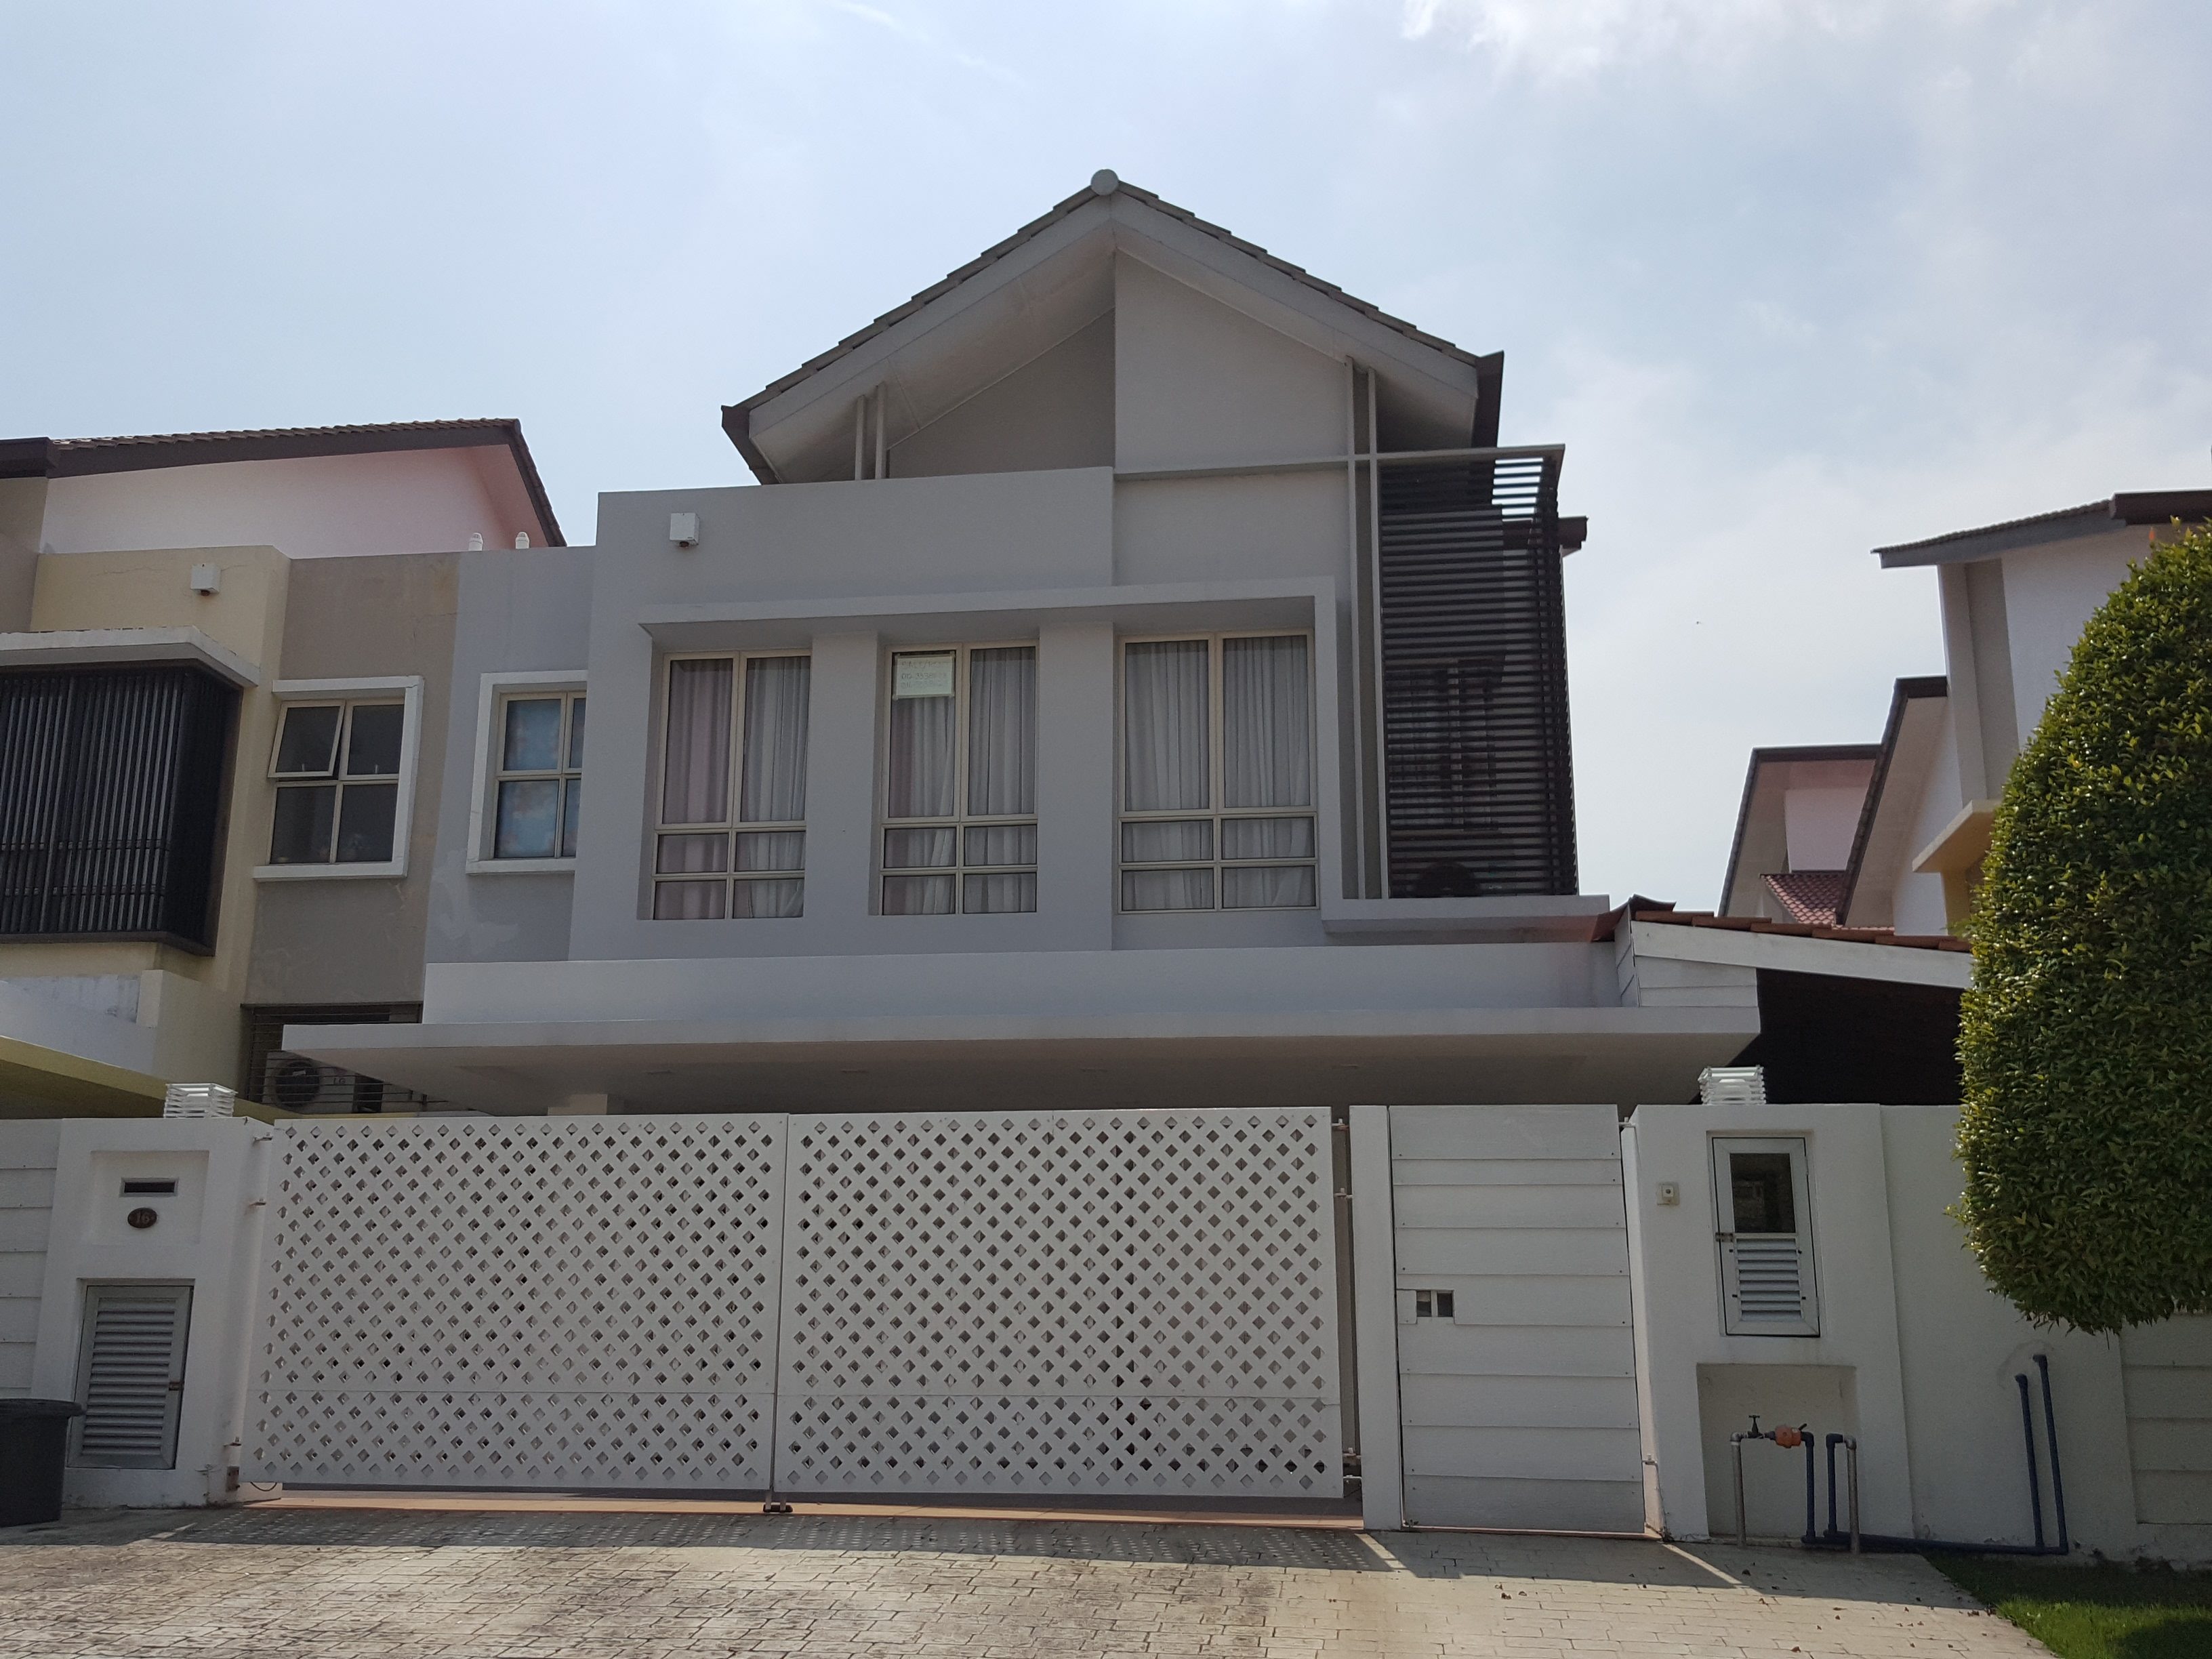 Ascarina, Setia Alam, 2 storey Semi Detached Gated House, Shah Alam, Selangor, Malaysia, For Sale 出售